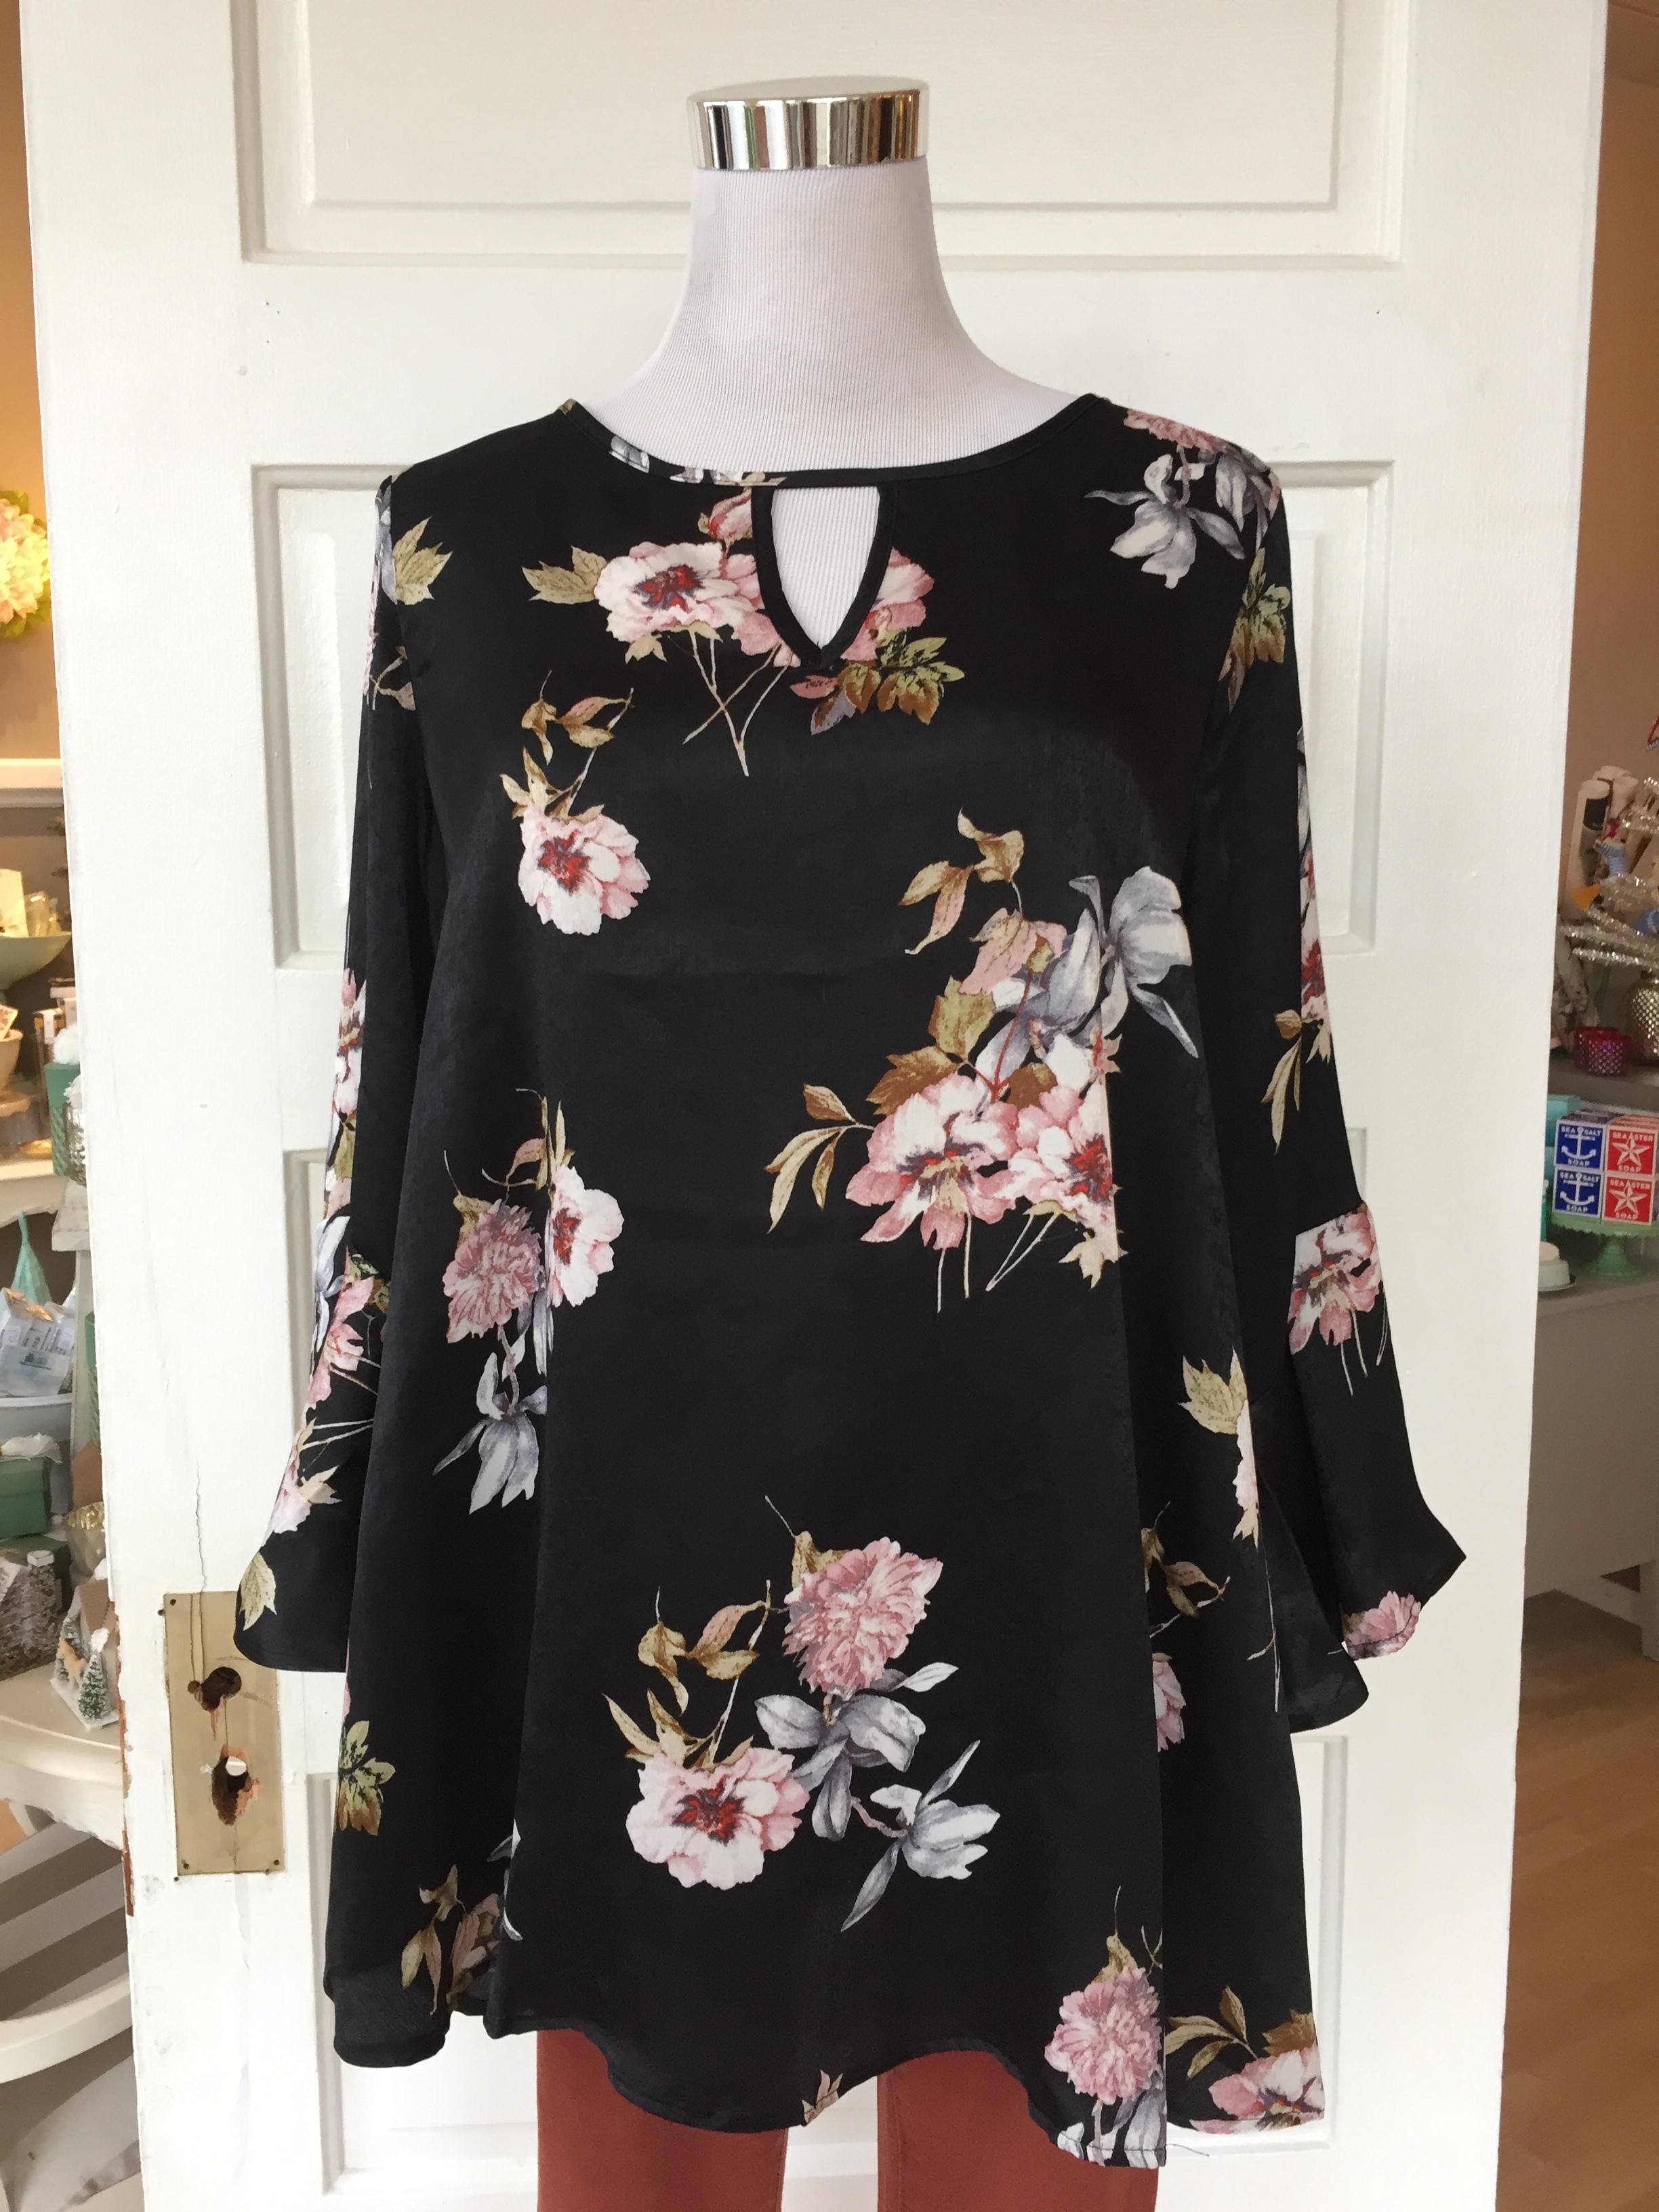 Flowy floral blouse ($32)